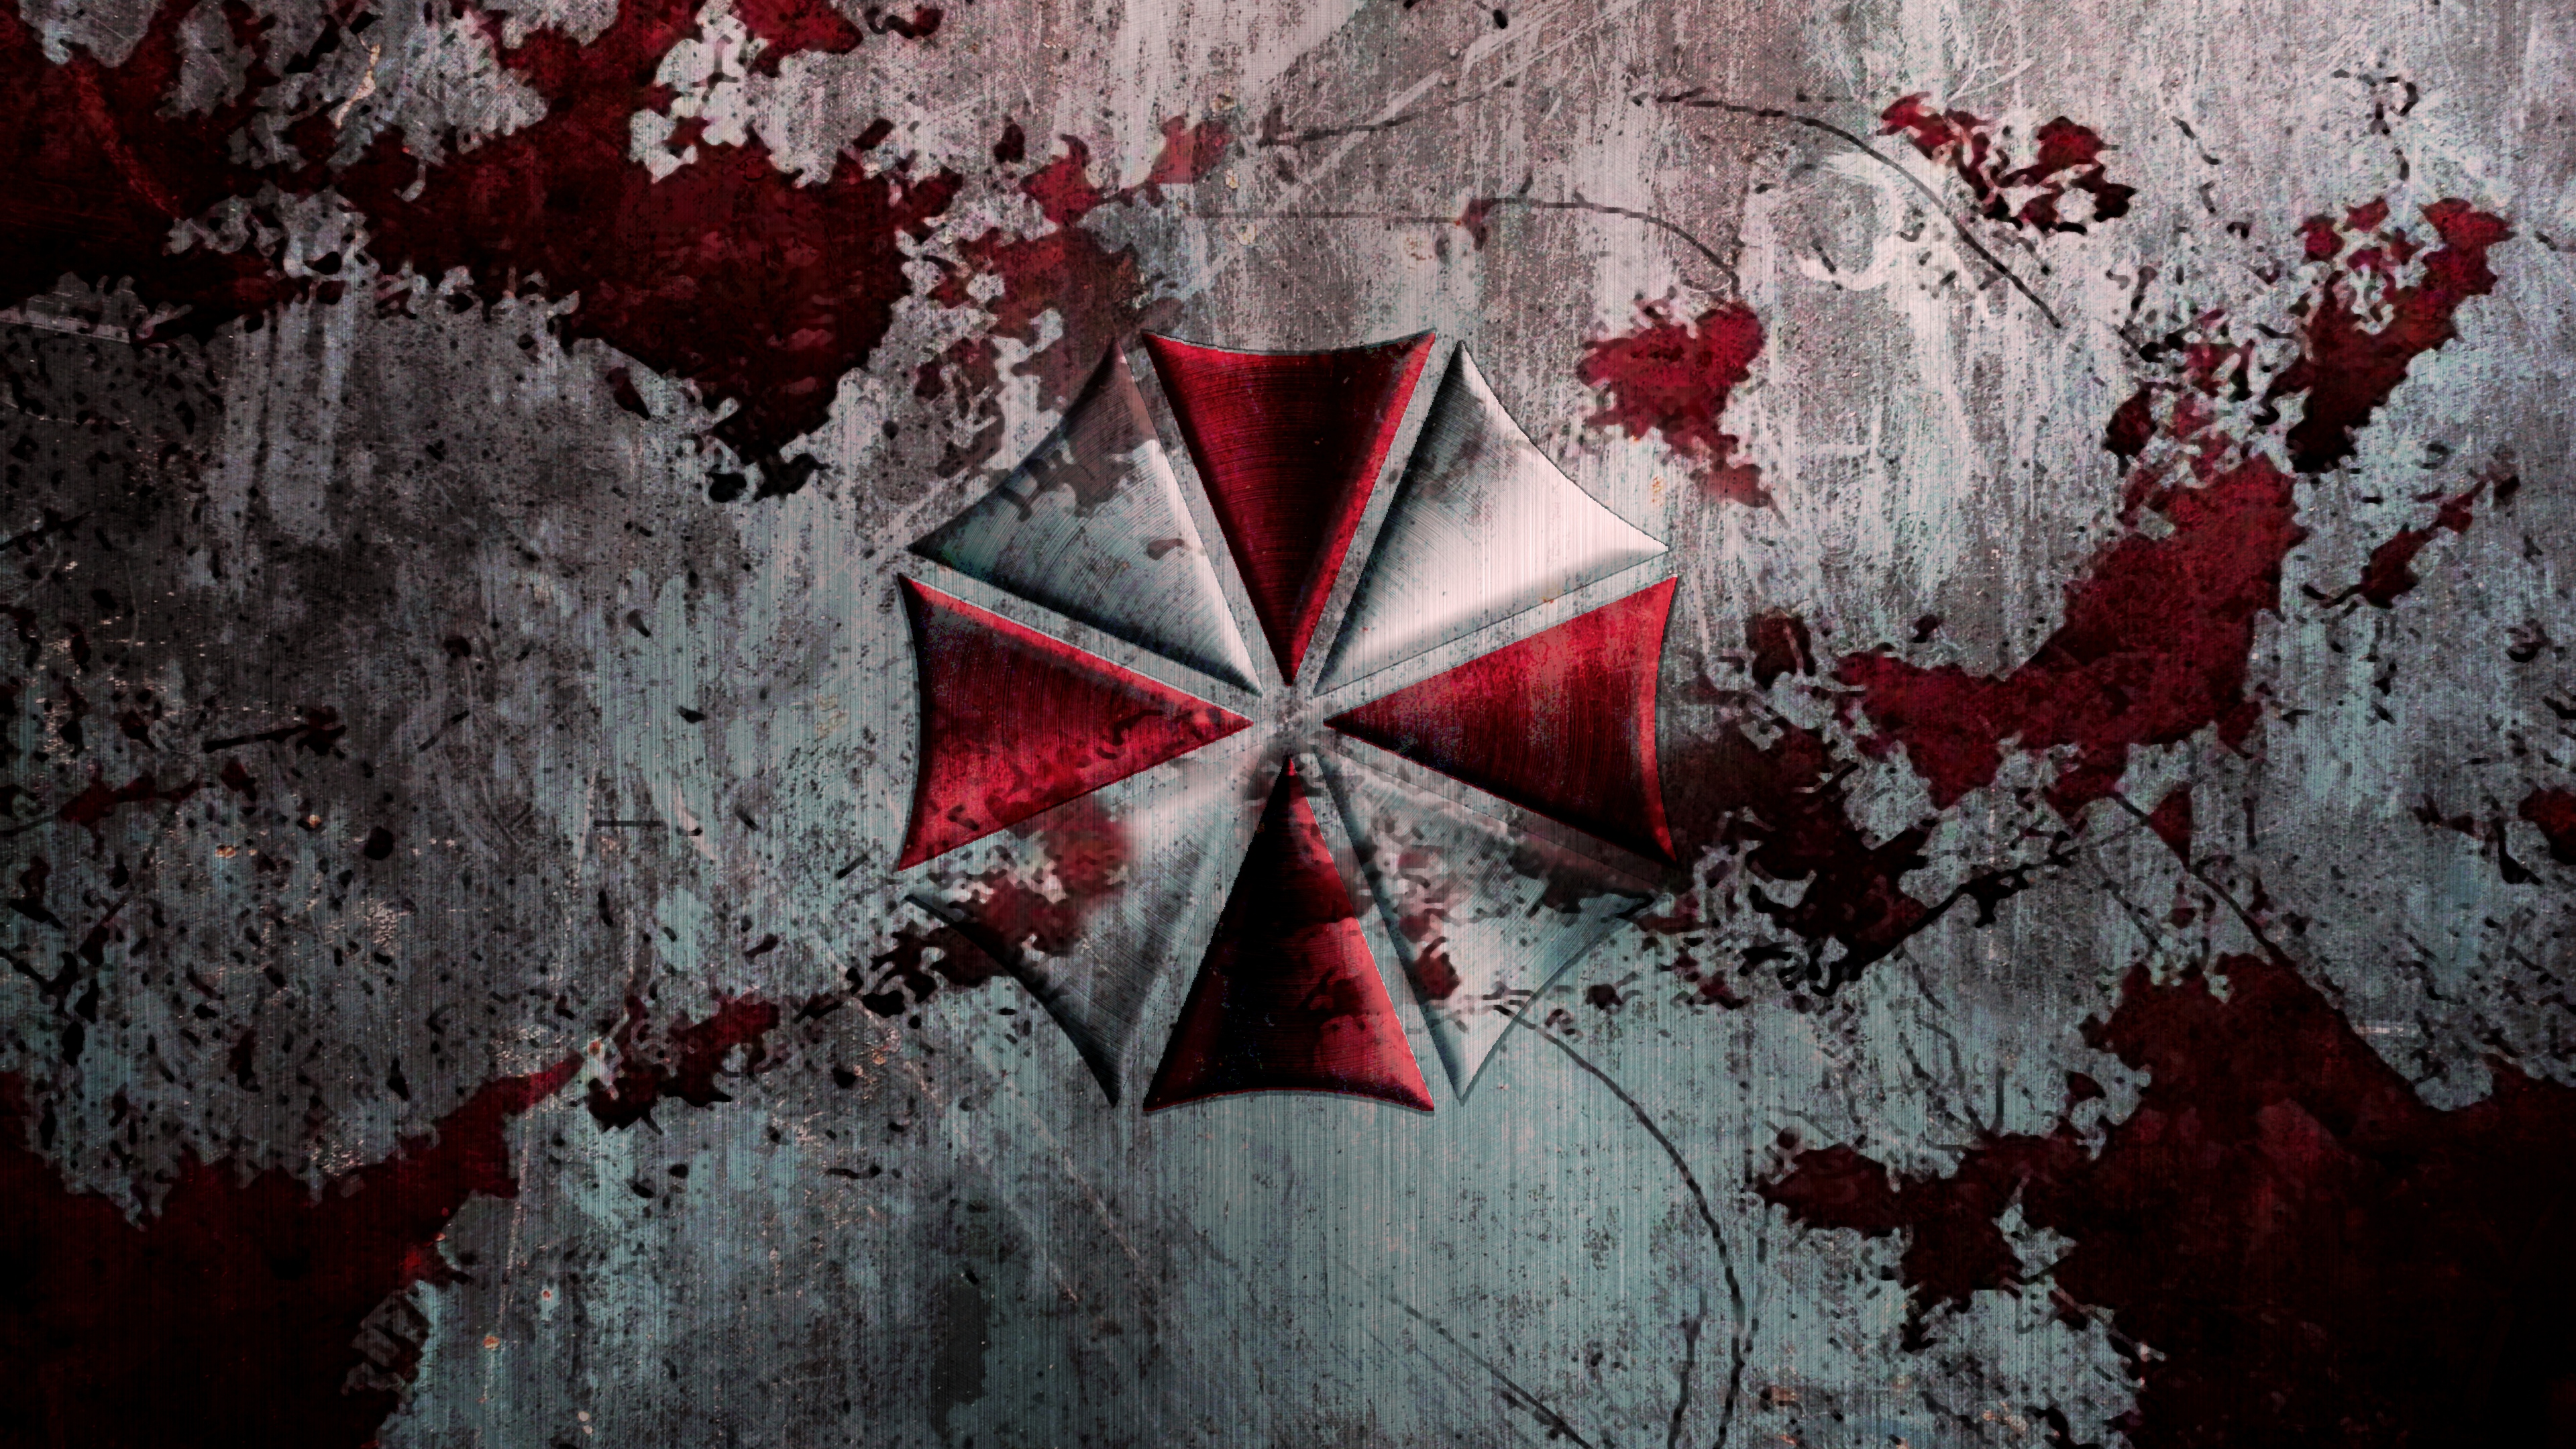 Resident Evil Wallpapers HD - WallpaperSafari